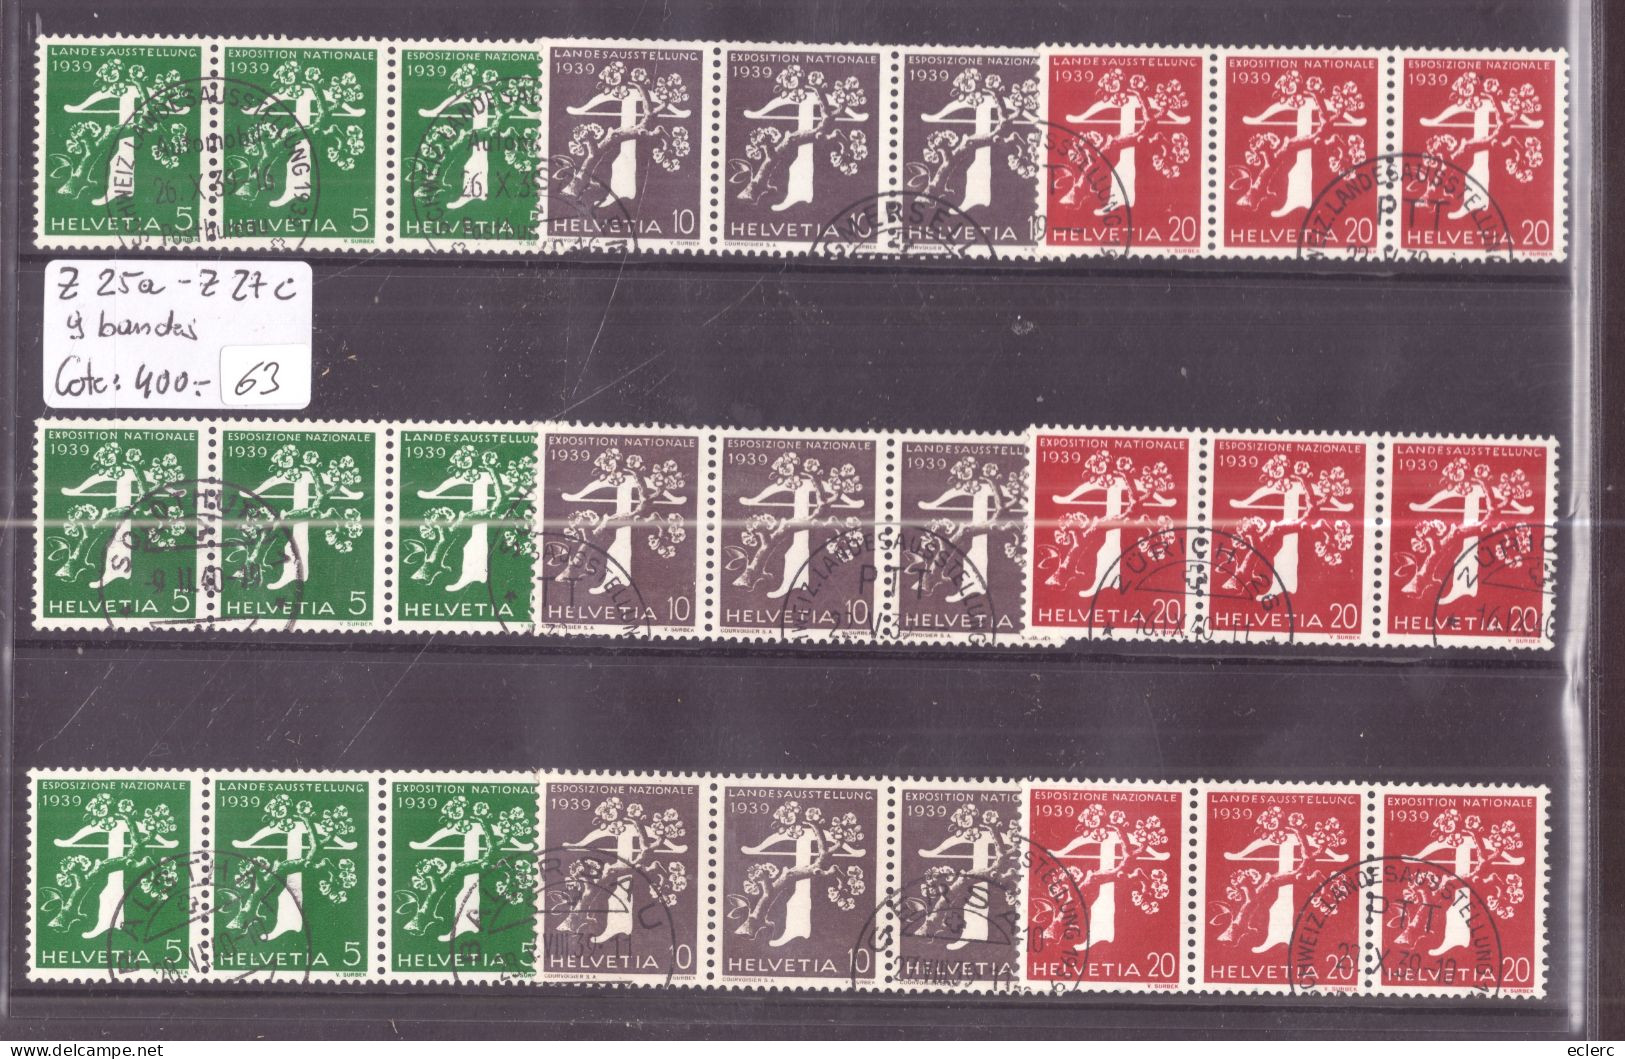 9 BANDES DE 3 EN 3 LANGUES - EXPOSITION ZÜRICH 1939 - TIMBRES DE ROULEAUX  - No Z 25a-Z 27c   OBLITERES - COTE: 400.- - Coil Stamps